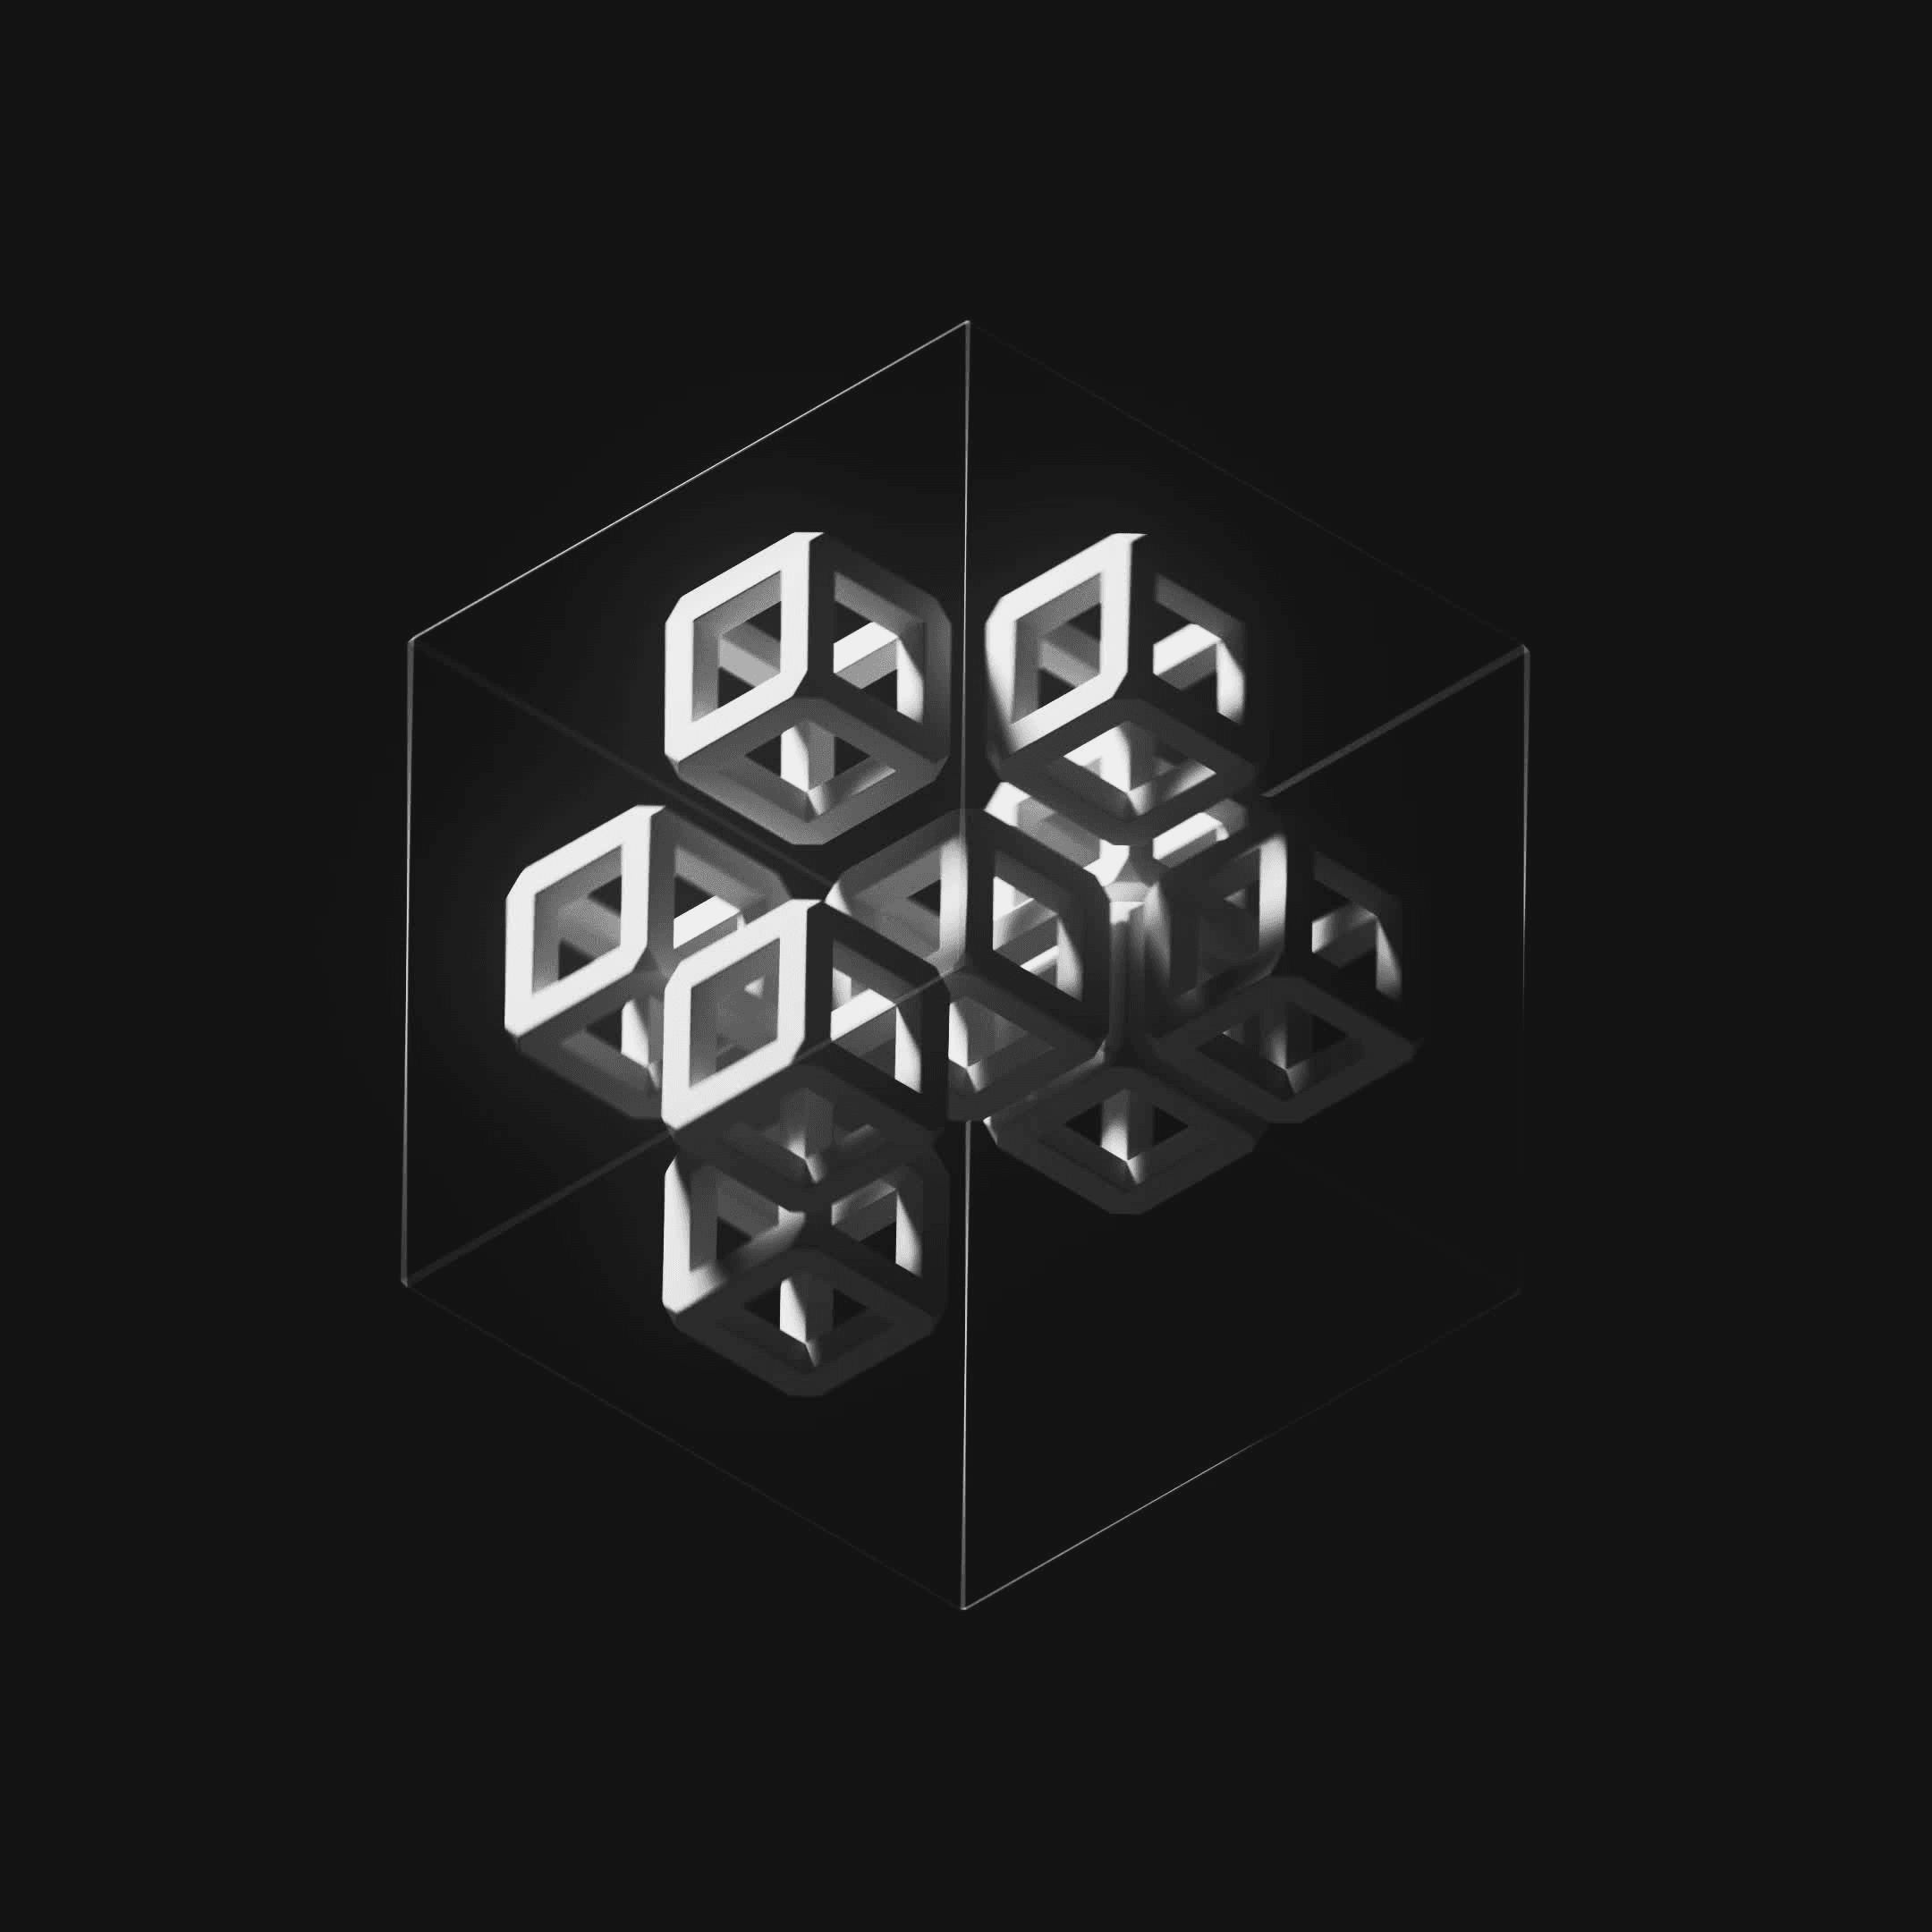 Ten Cubes #160/247